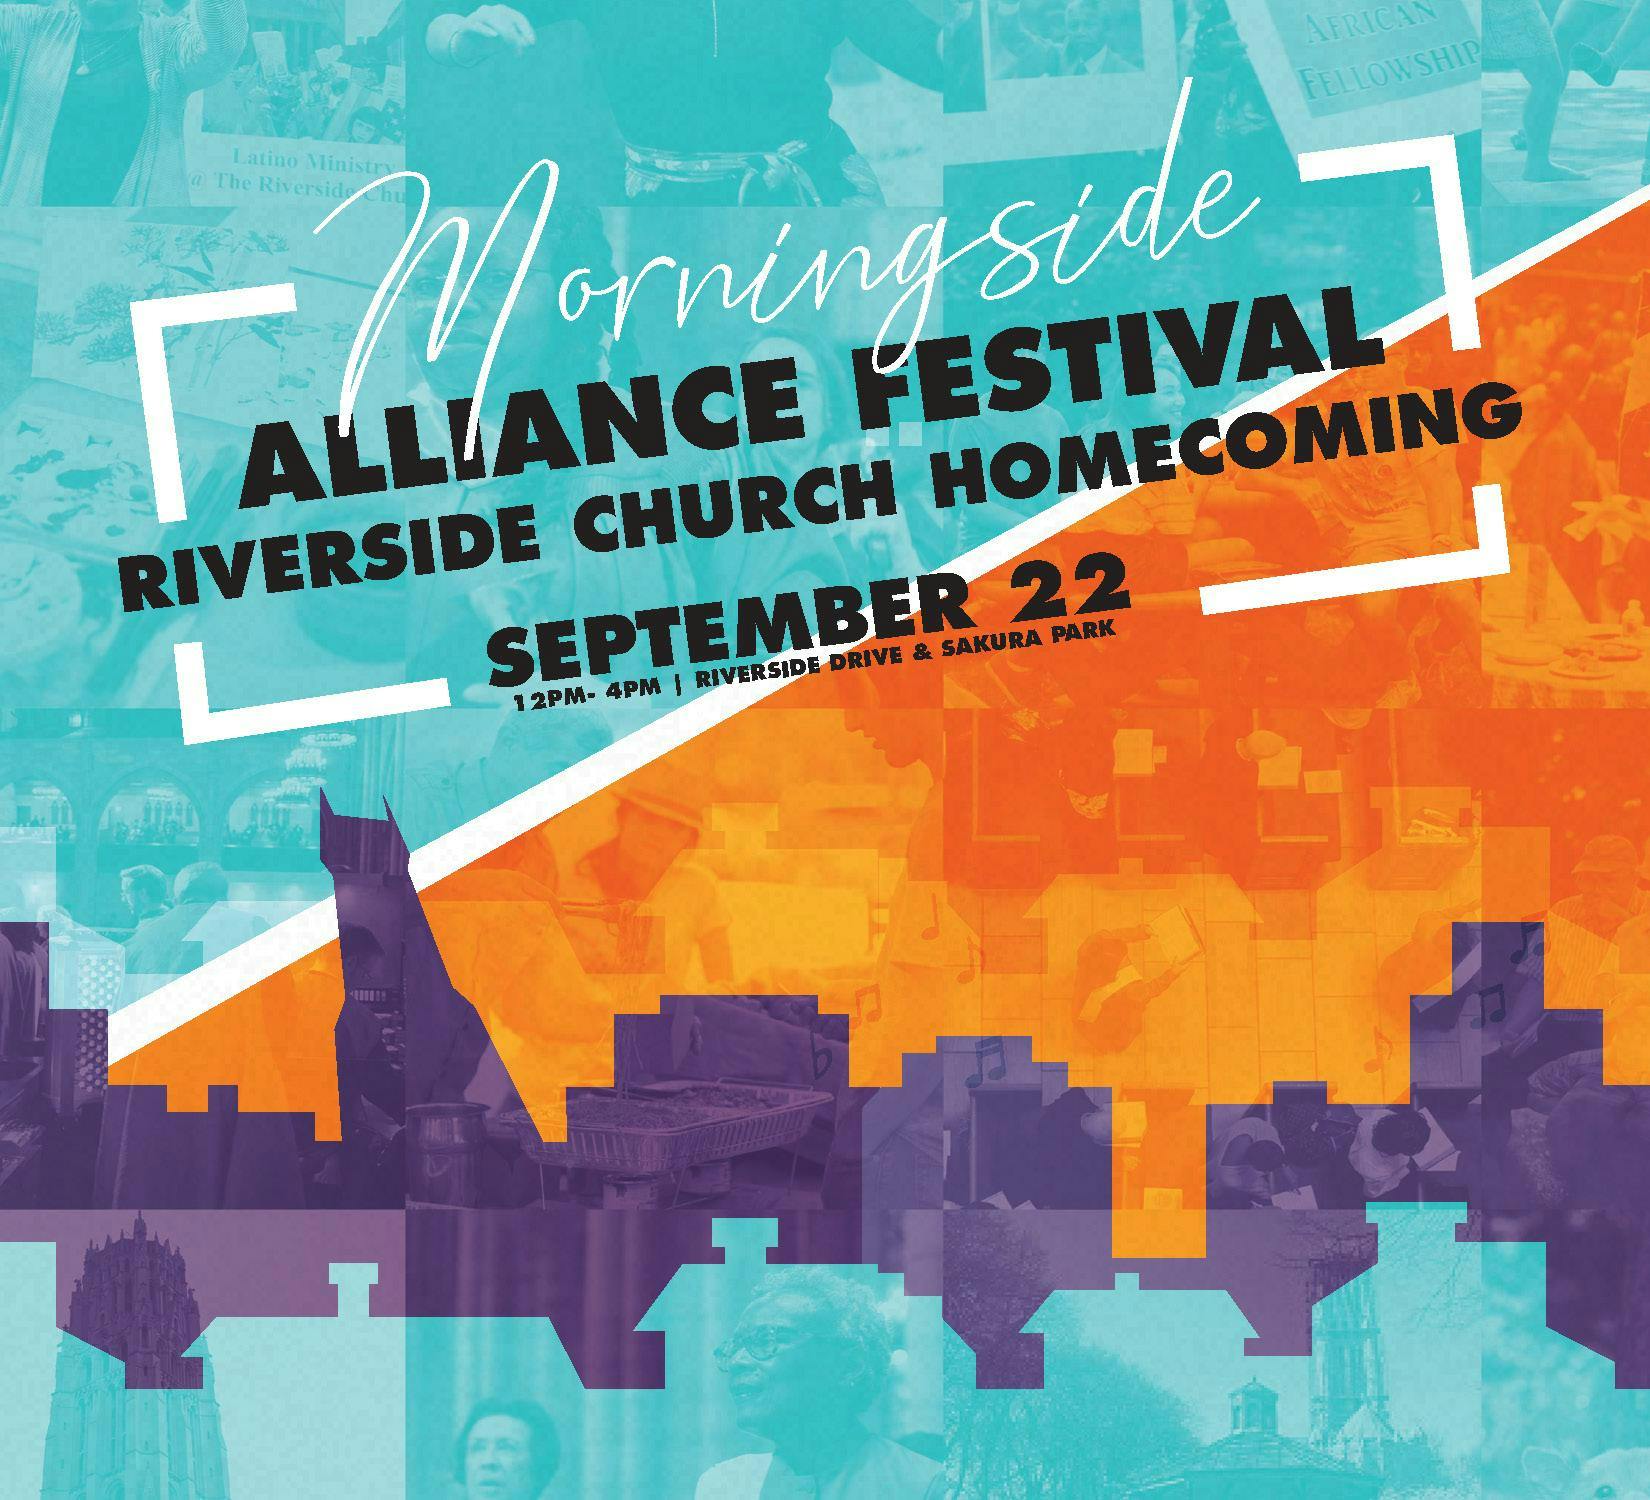 Morningside Alliance Festival & Riverside Church Homecoming